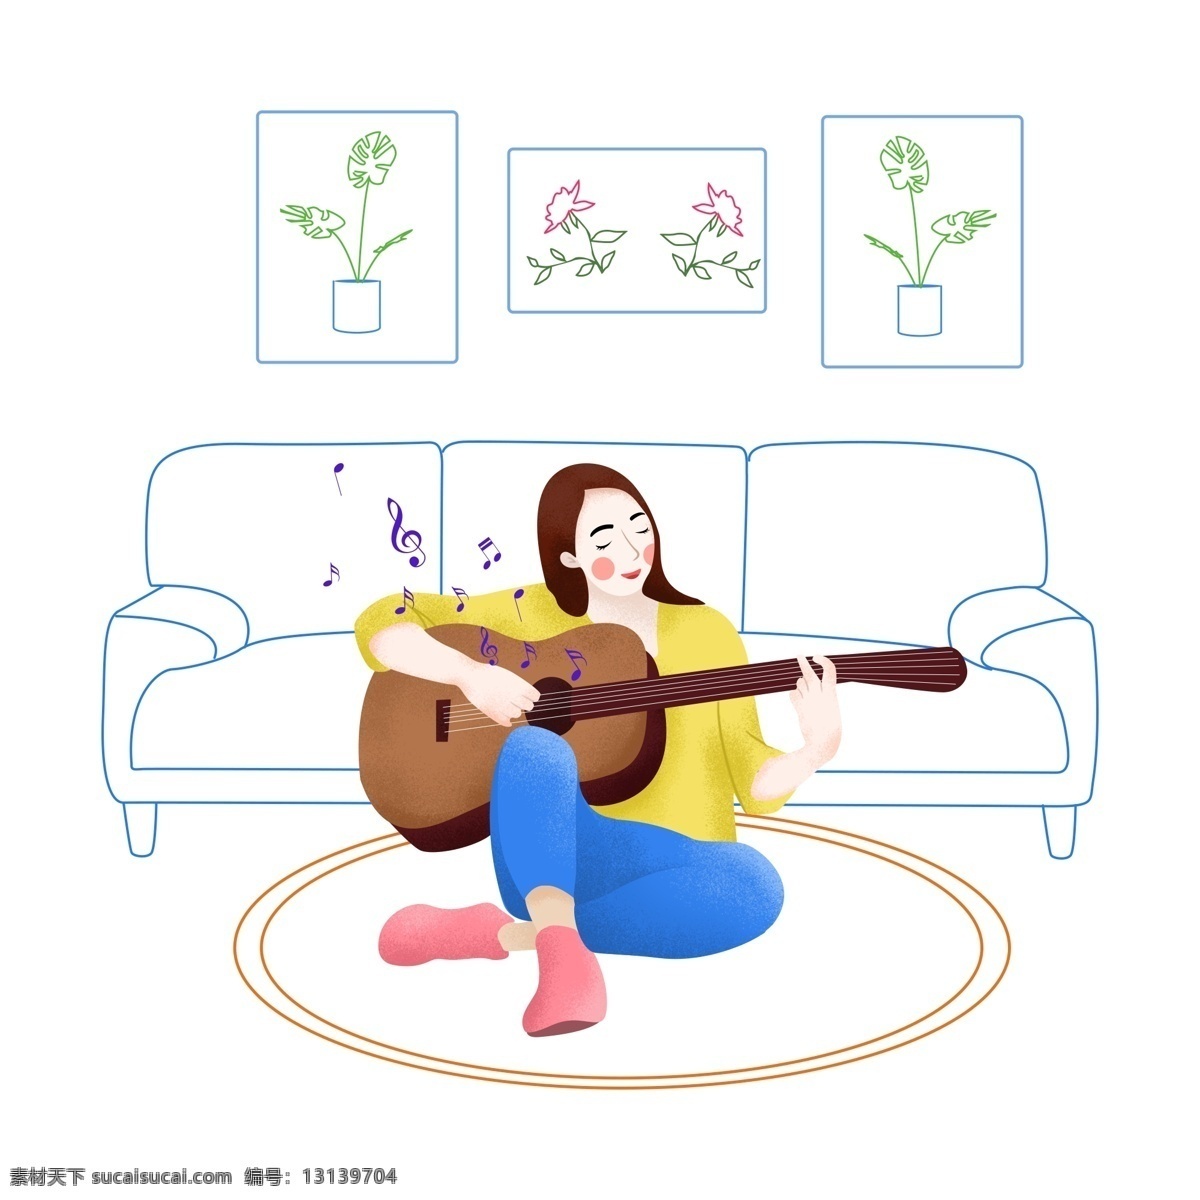 手绘 虚实 象生 风格 坐 沙发 前 弹 吉他 女生 手绘女生 元素 线条沙发 线条植物 弹吉他的女生 坐地上的女生